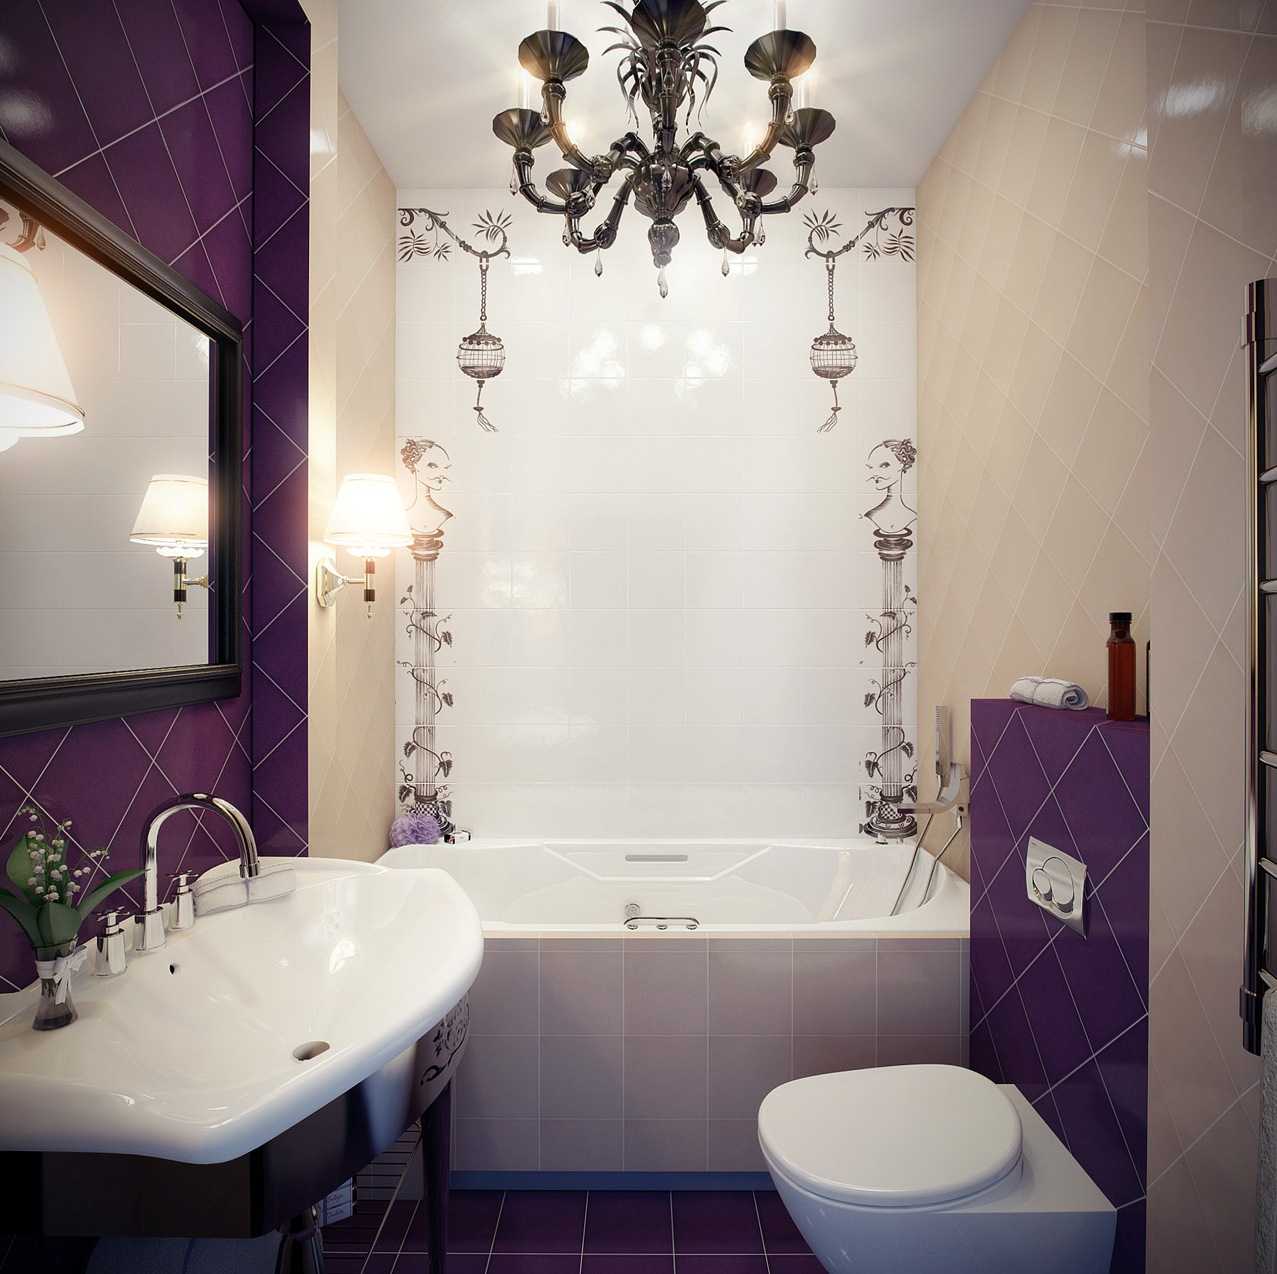 Оформление ванной комнаты плиткой фото идеи маленькой комнаты